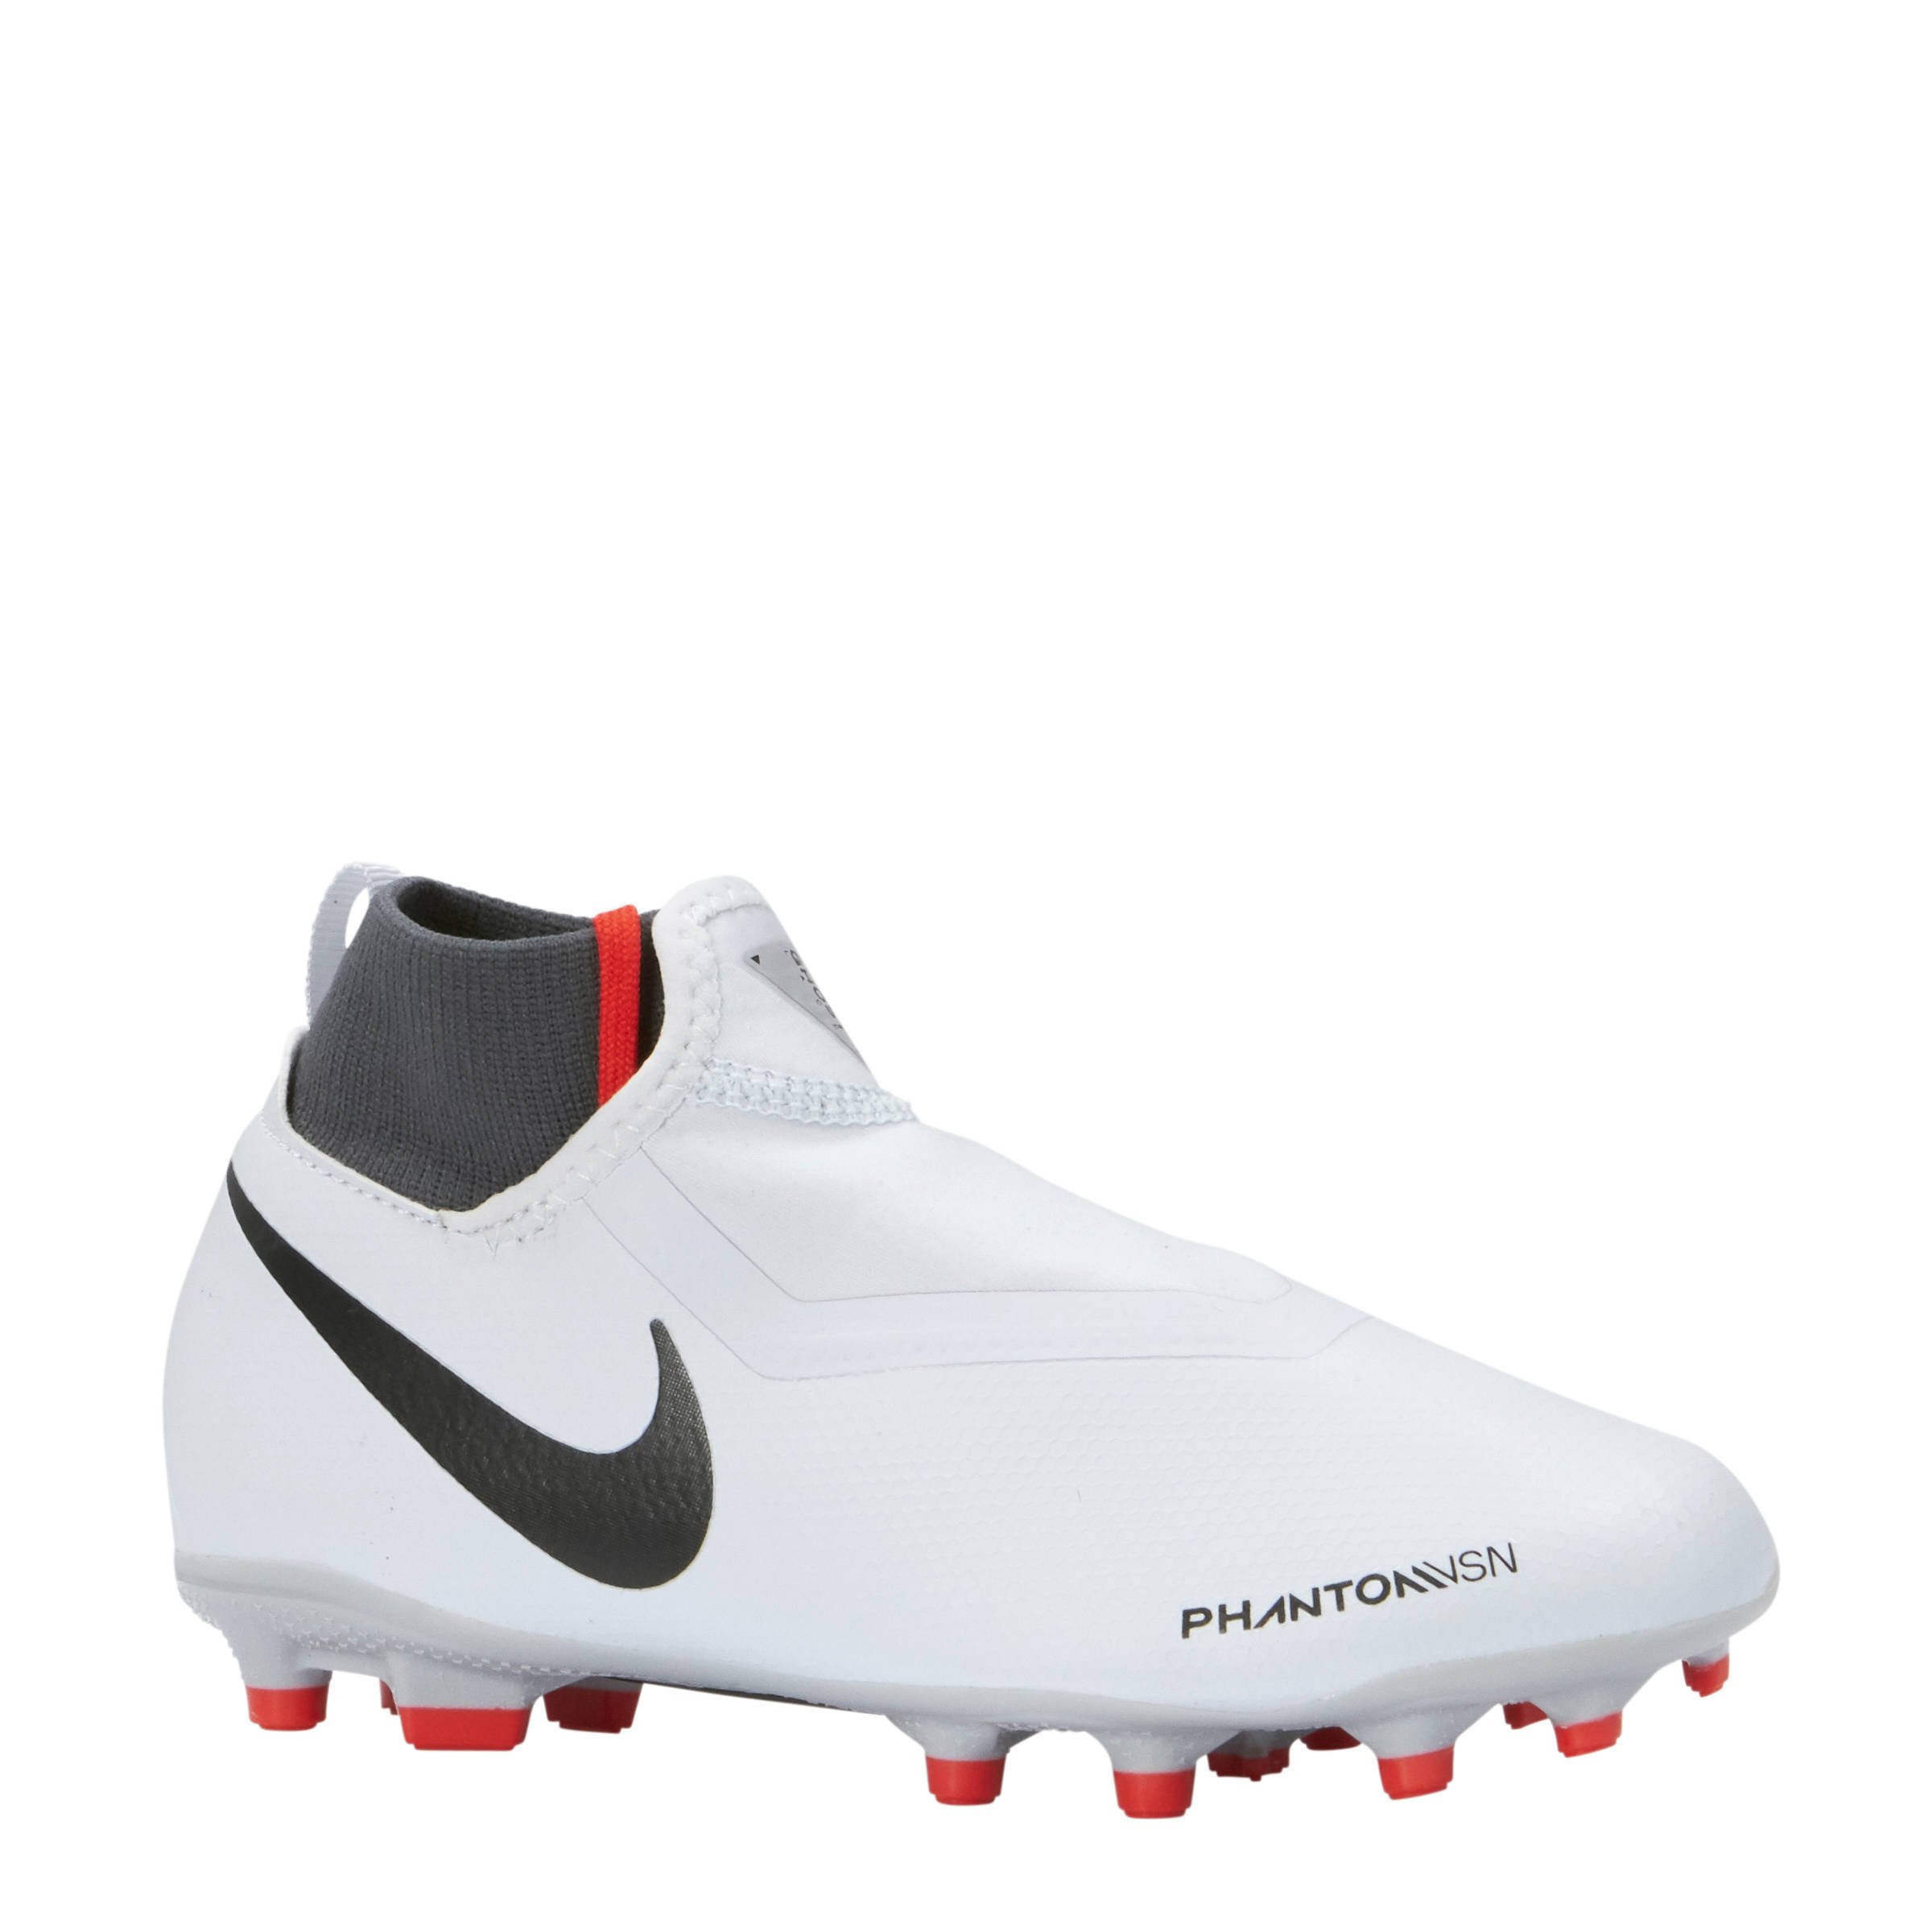 Køb Nike Phantom Vision fodboldstøvler SPORTMASTER.dk